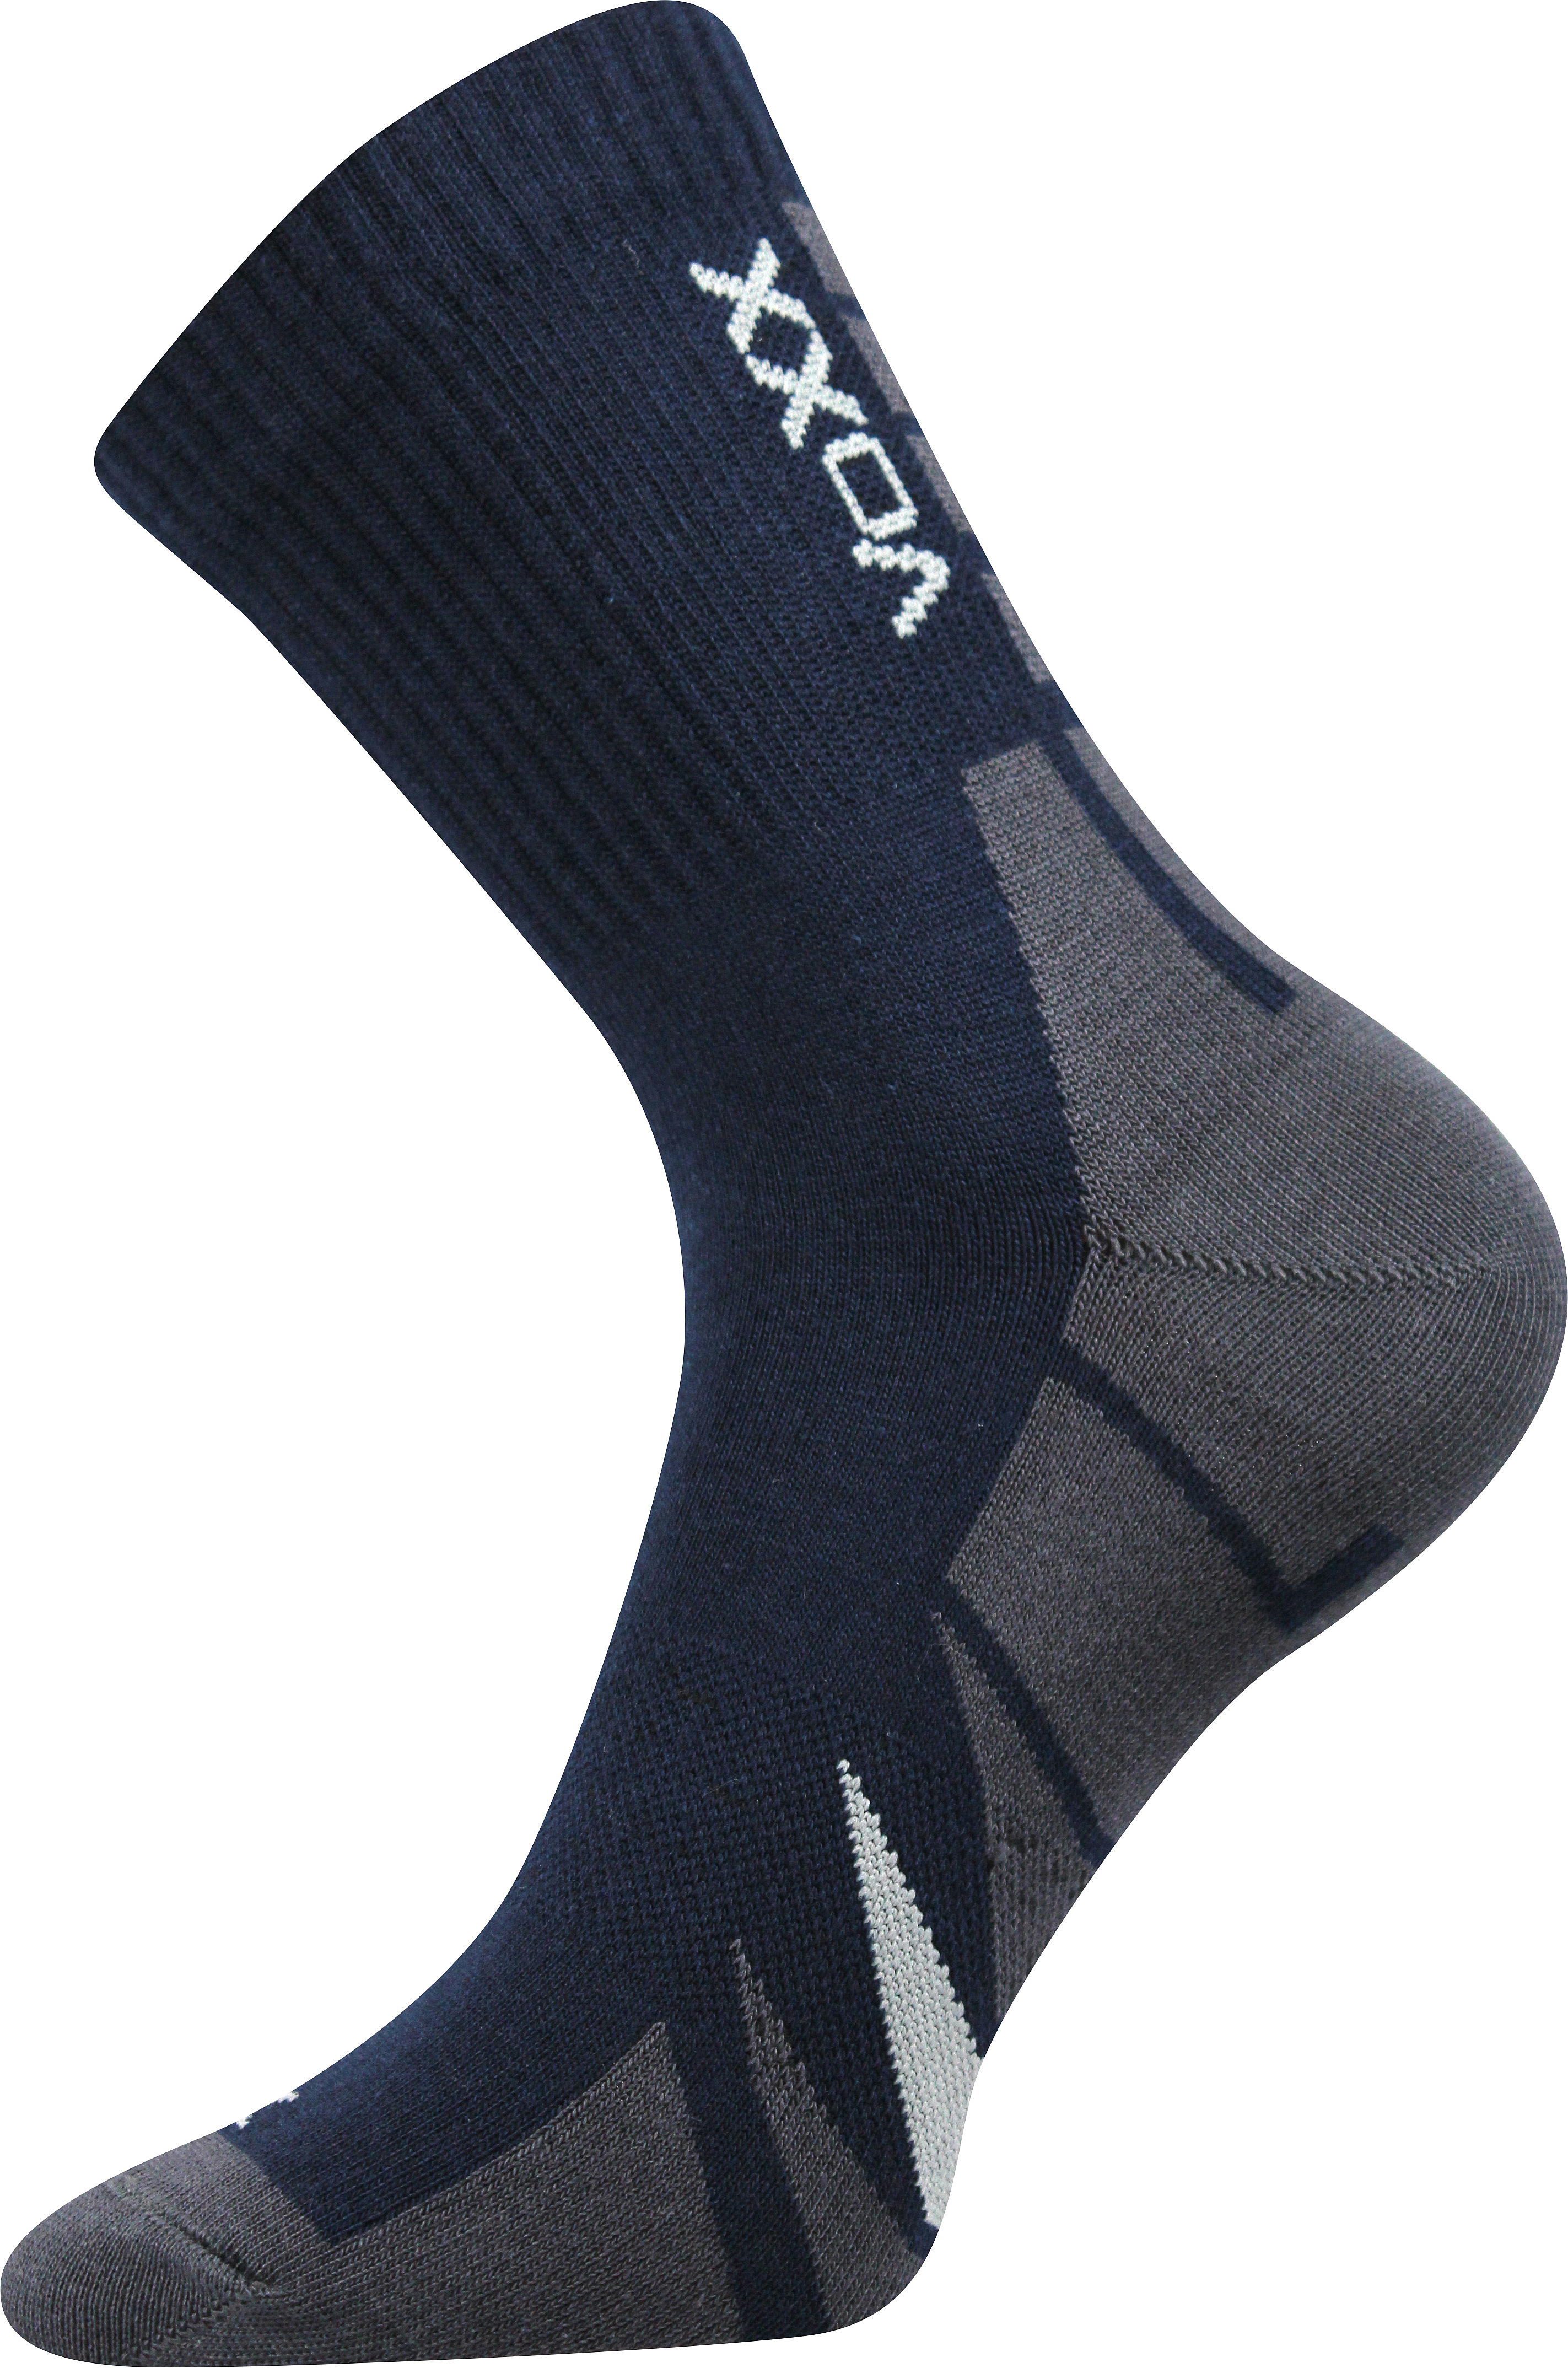 Ponožky sportovní Voxx Hermes - navy, 39-42